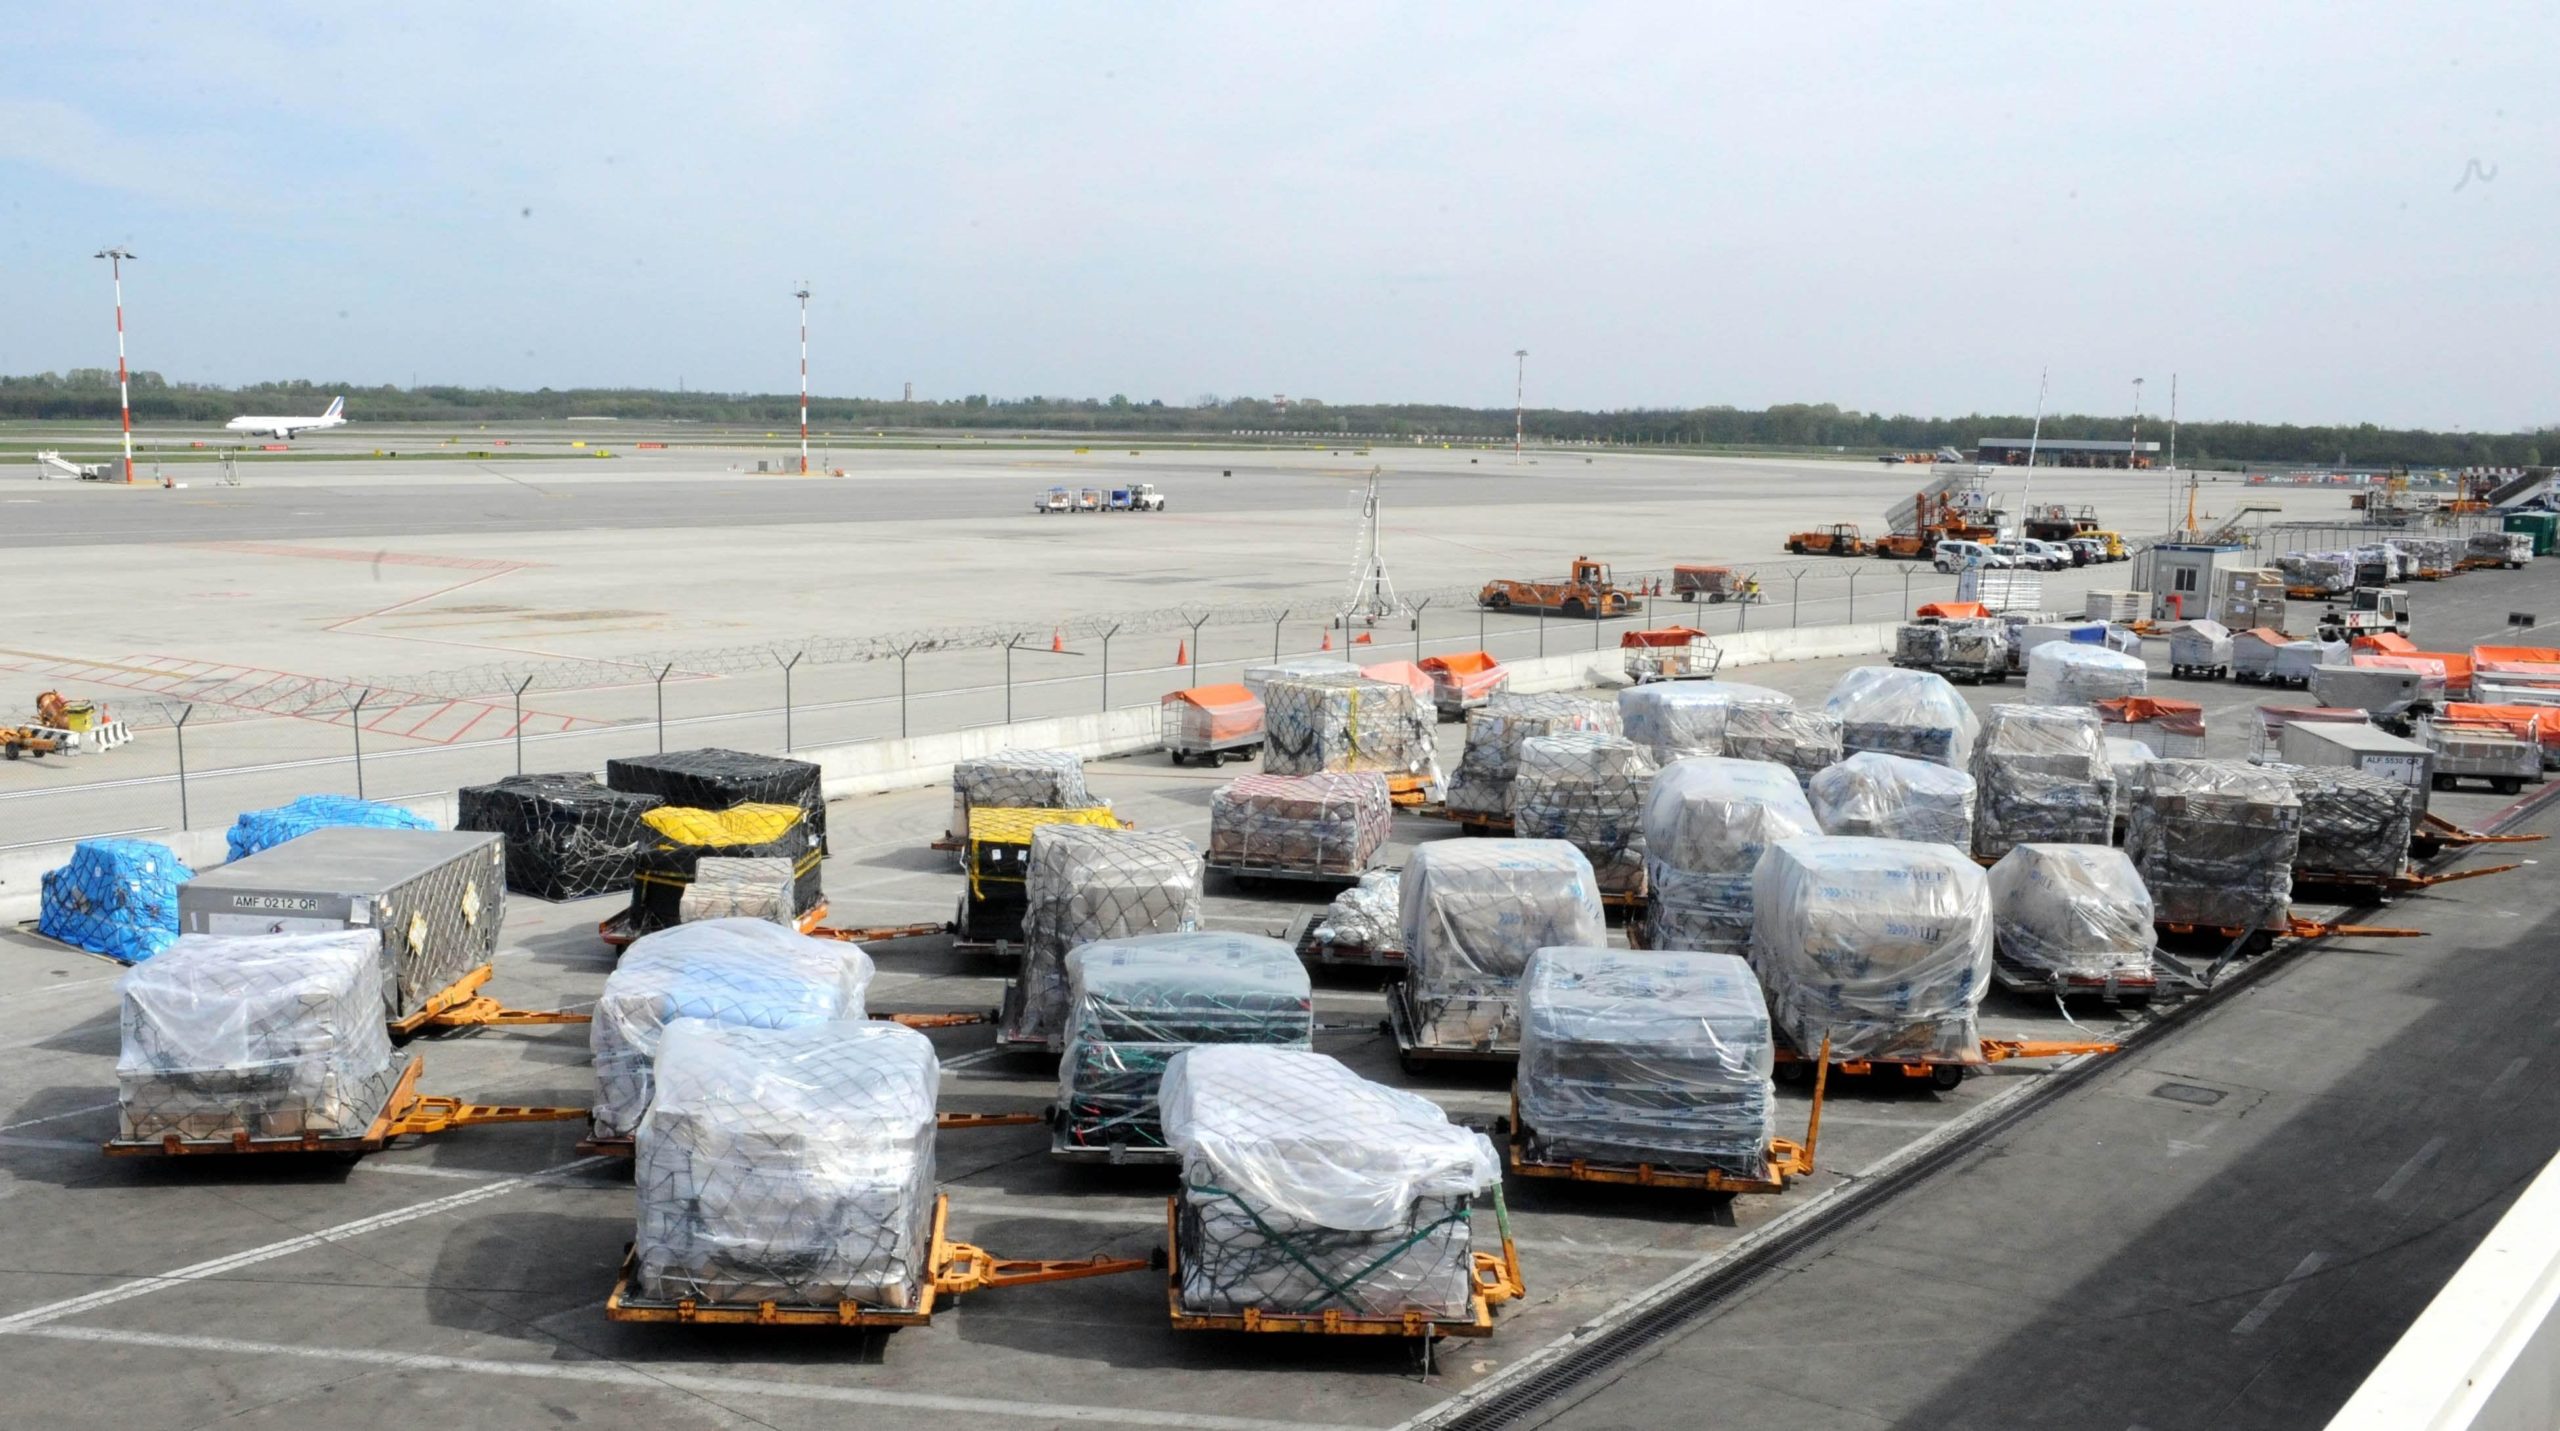 Circa 4 mila le tonnellate di merce rimasta bloccata in questi giorni alla Cargo City dell'aeroporto di Malpensa per l'effetto della chiusura dello spazio aereo del nord Italia. A quanto si e' appreso, nei magazzini c'e' anche merce deperibile e una discreta quantita' di posta da smistare.  LAIACONA /JI